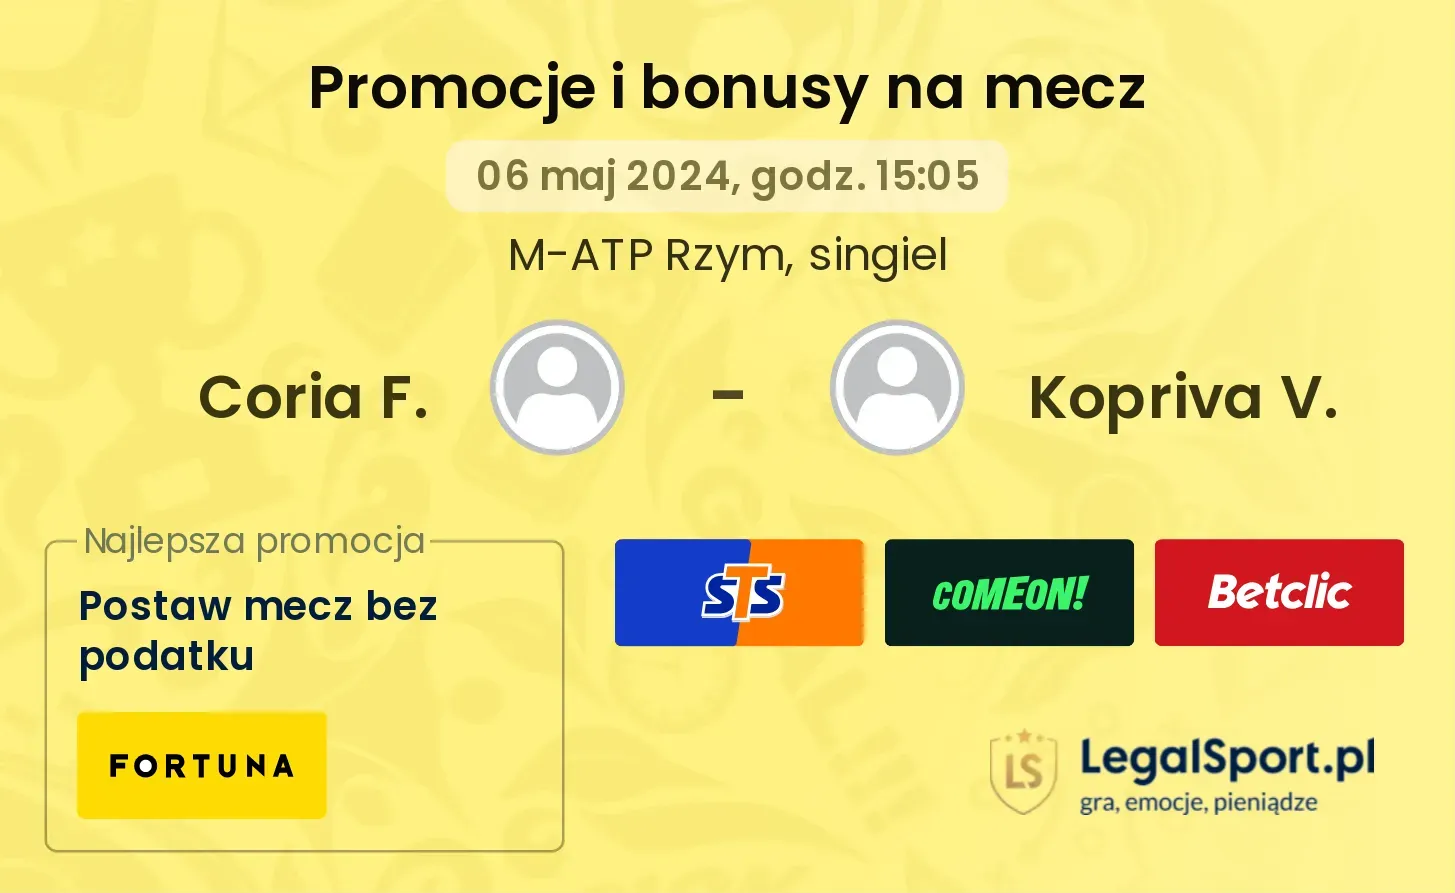 Coria F. - Kopriva V. promocje bonusy na mecz